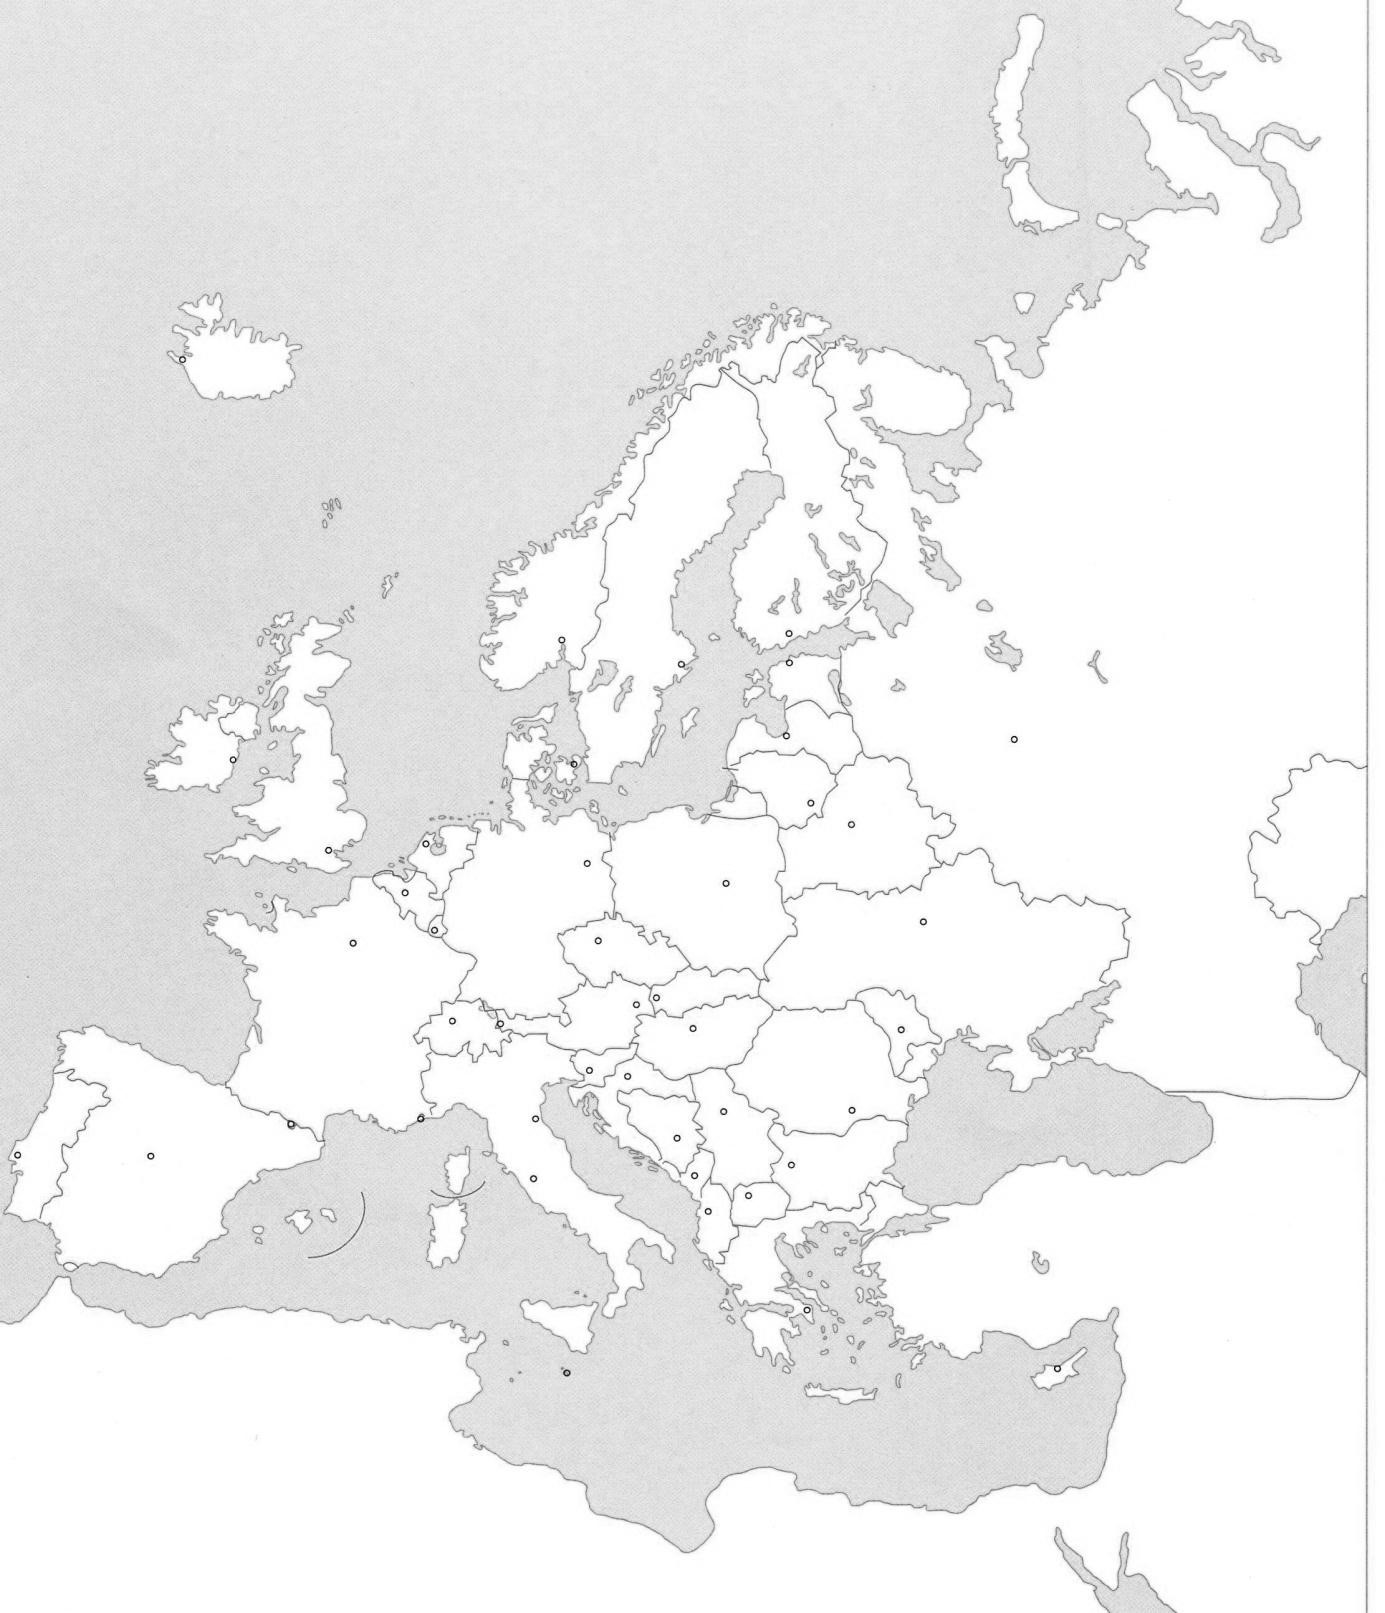 karta europe s državama Osnovna škola 